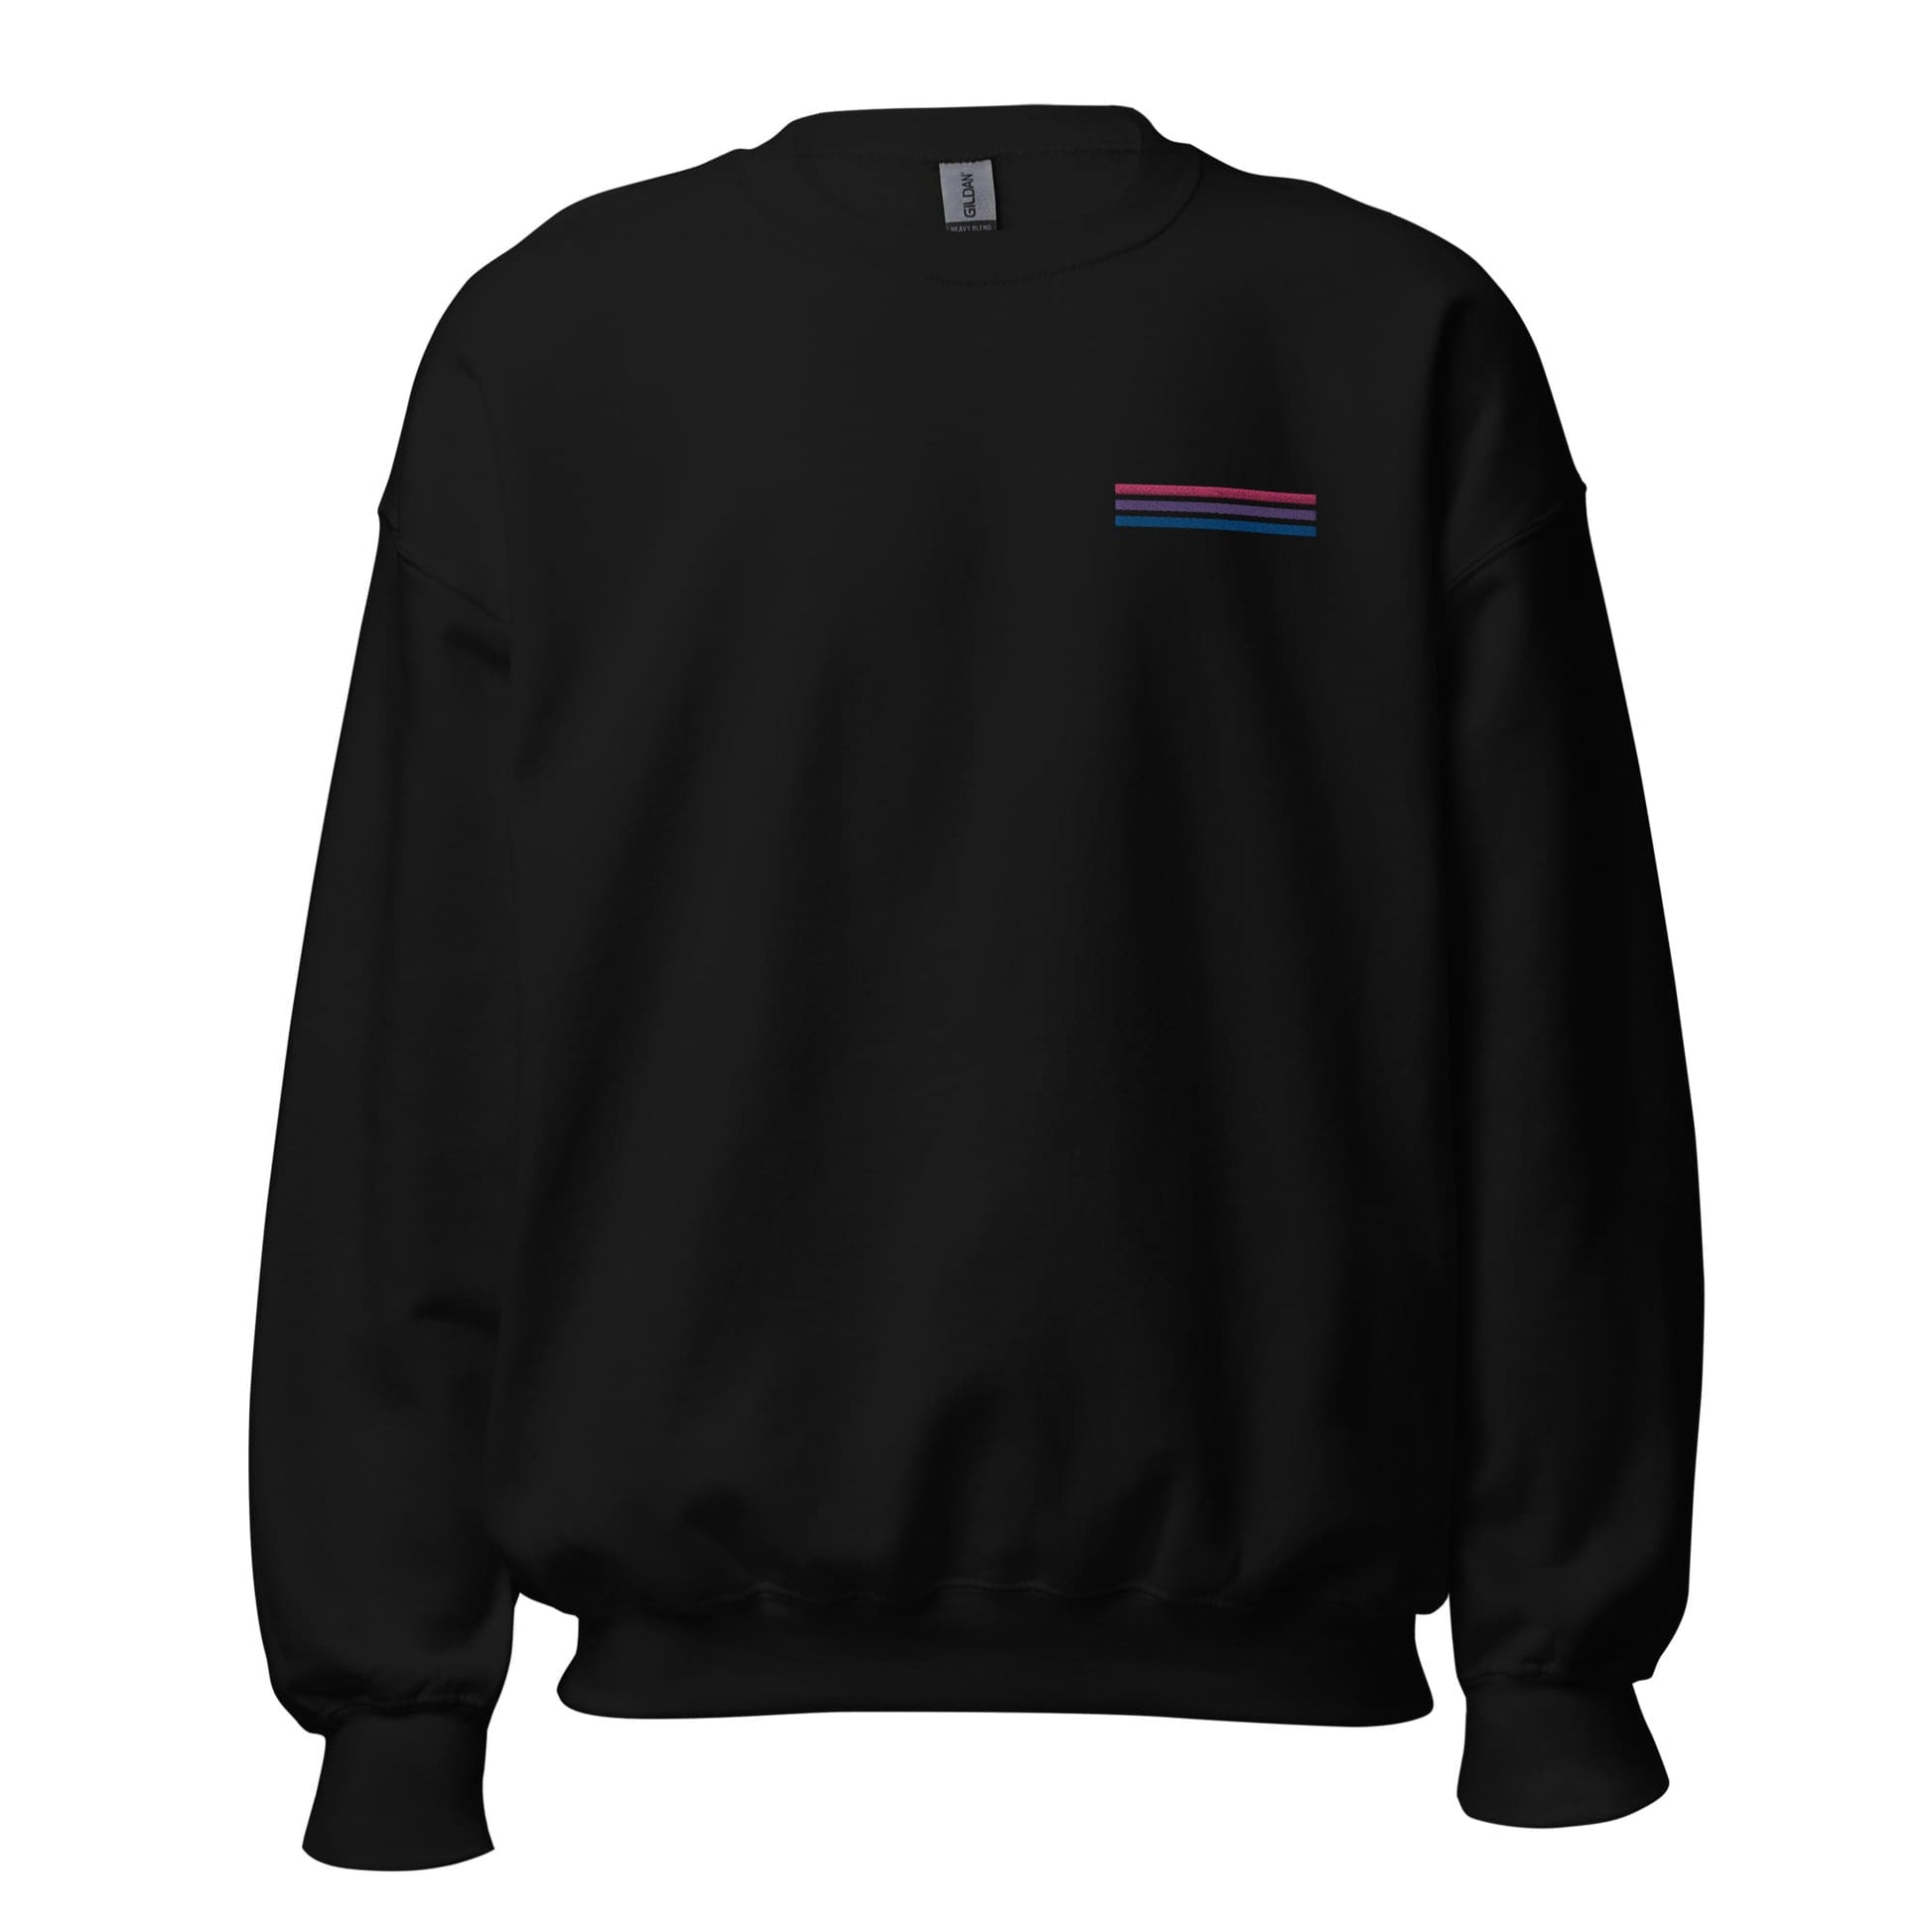 bisexual sweatshirt, subtle bi pride flag embroidered pocket design hooded sweater, hang